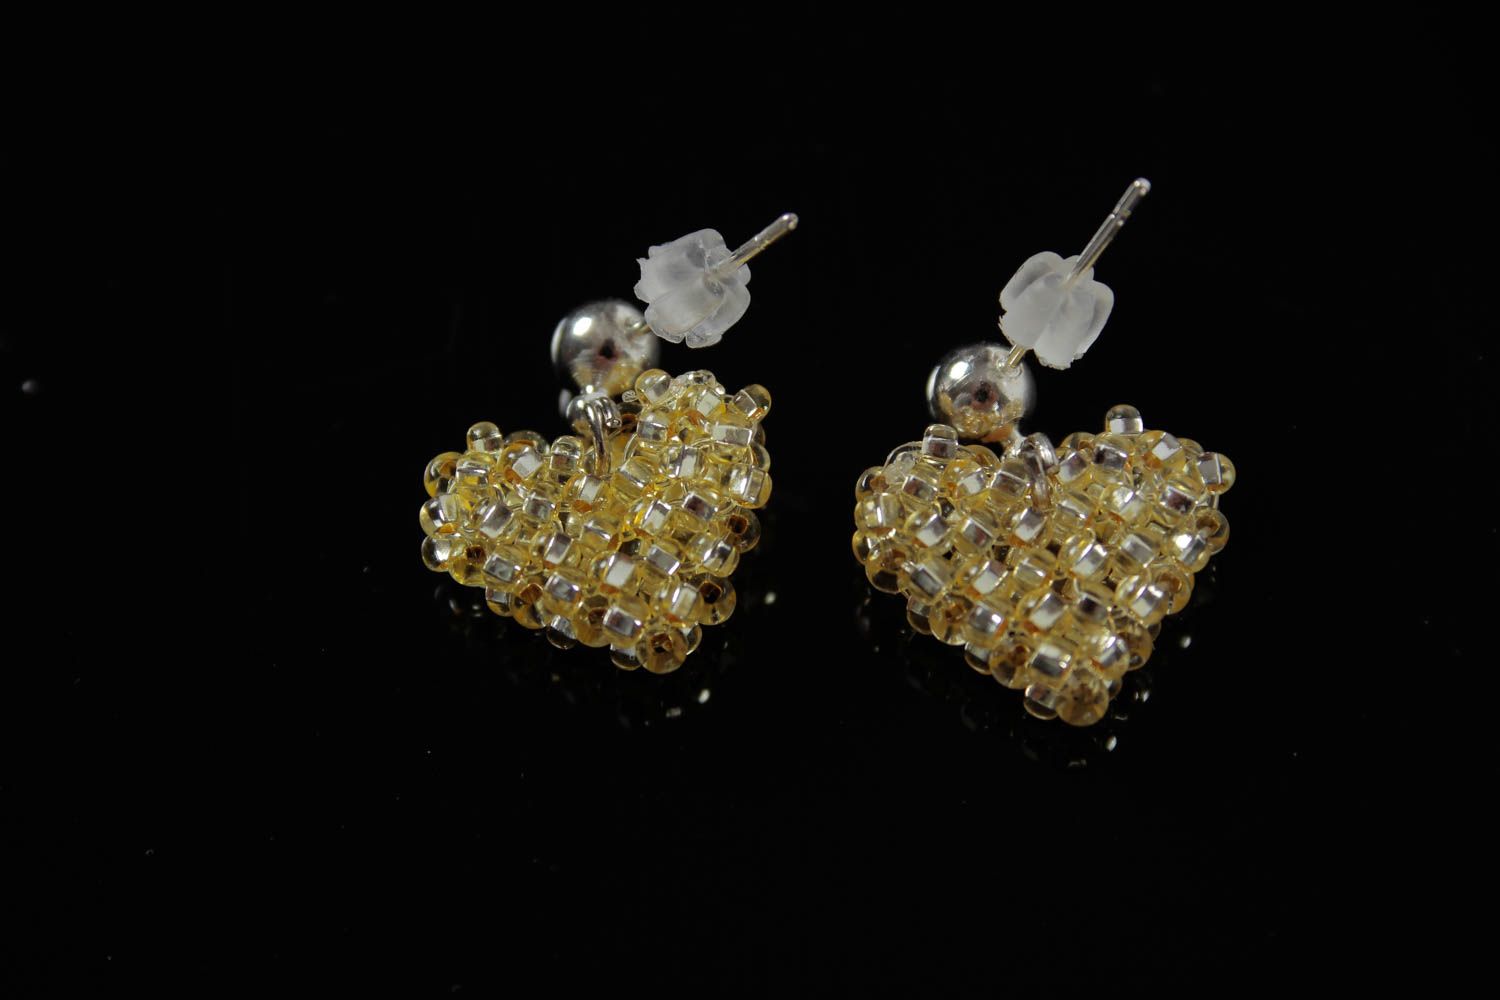 Handmade earrings beads jewelry accessory for women littl earrings best gift photo 5